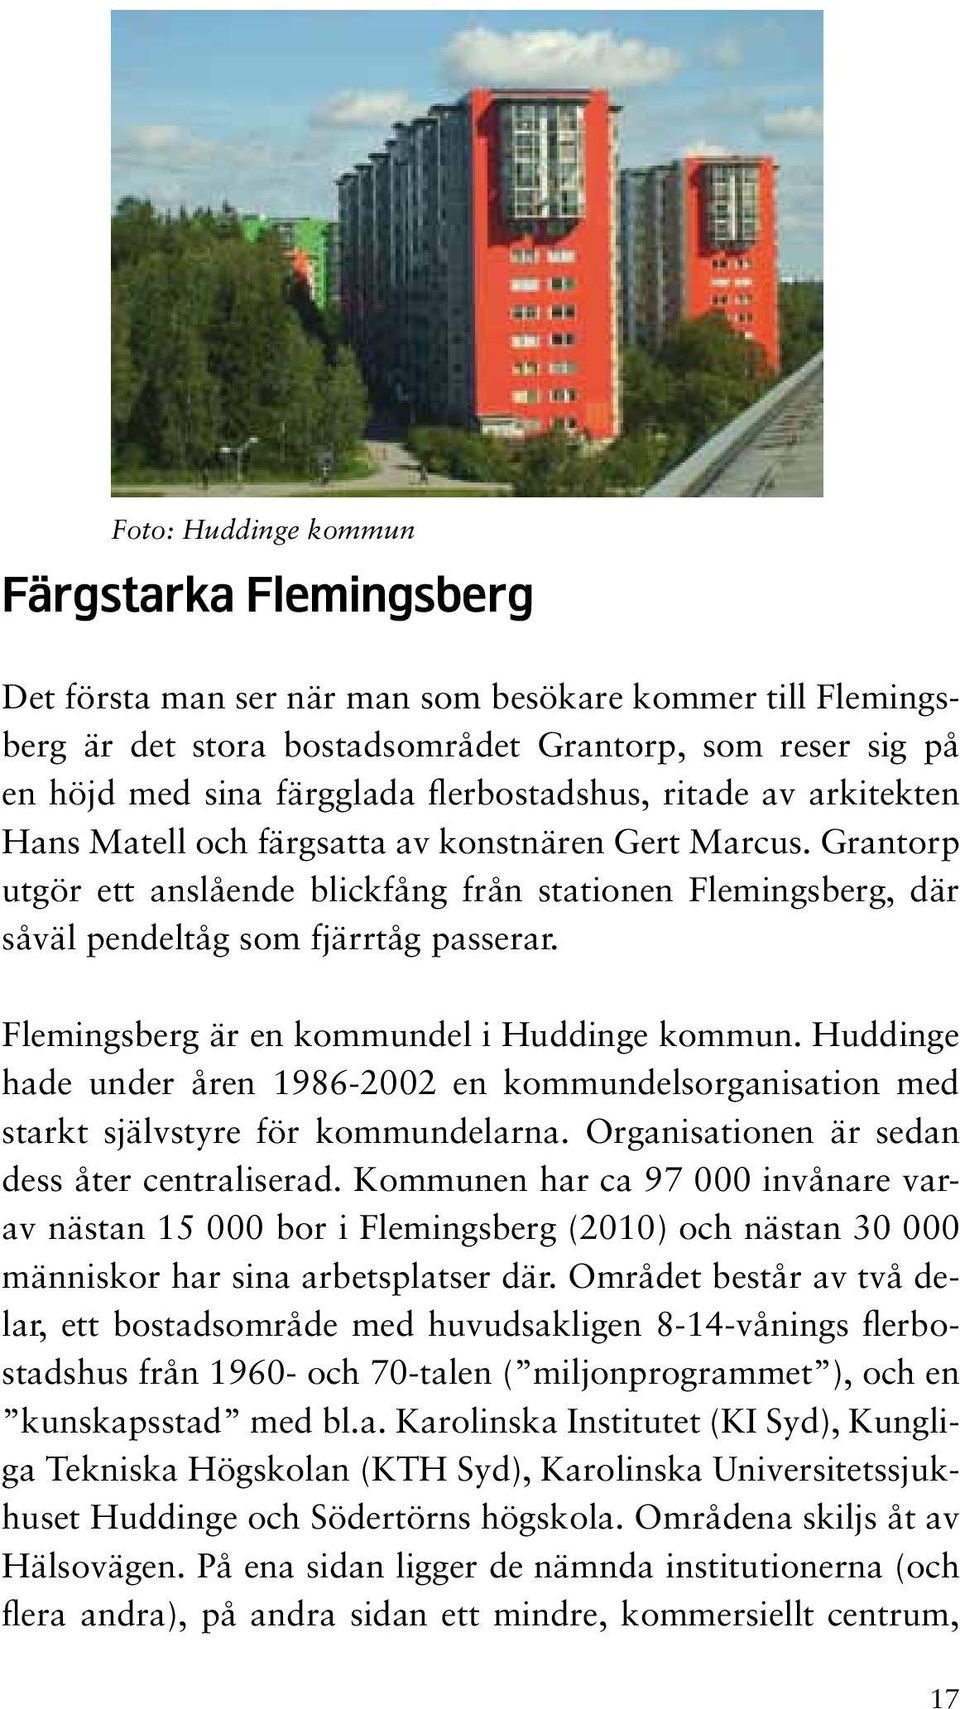 Flemingsberg är en kommundel i Huddinge kommun. Huddinge hade under åren 1986-2002 en kommundelsorganisation med starkt självstyre för kommundelarna. Organisationen är sedan dess åter centraliserad.